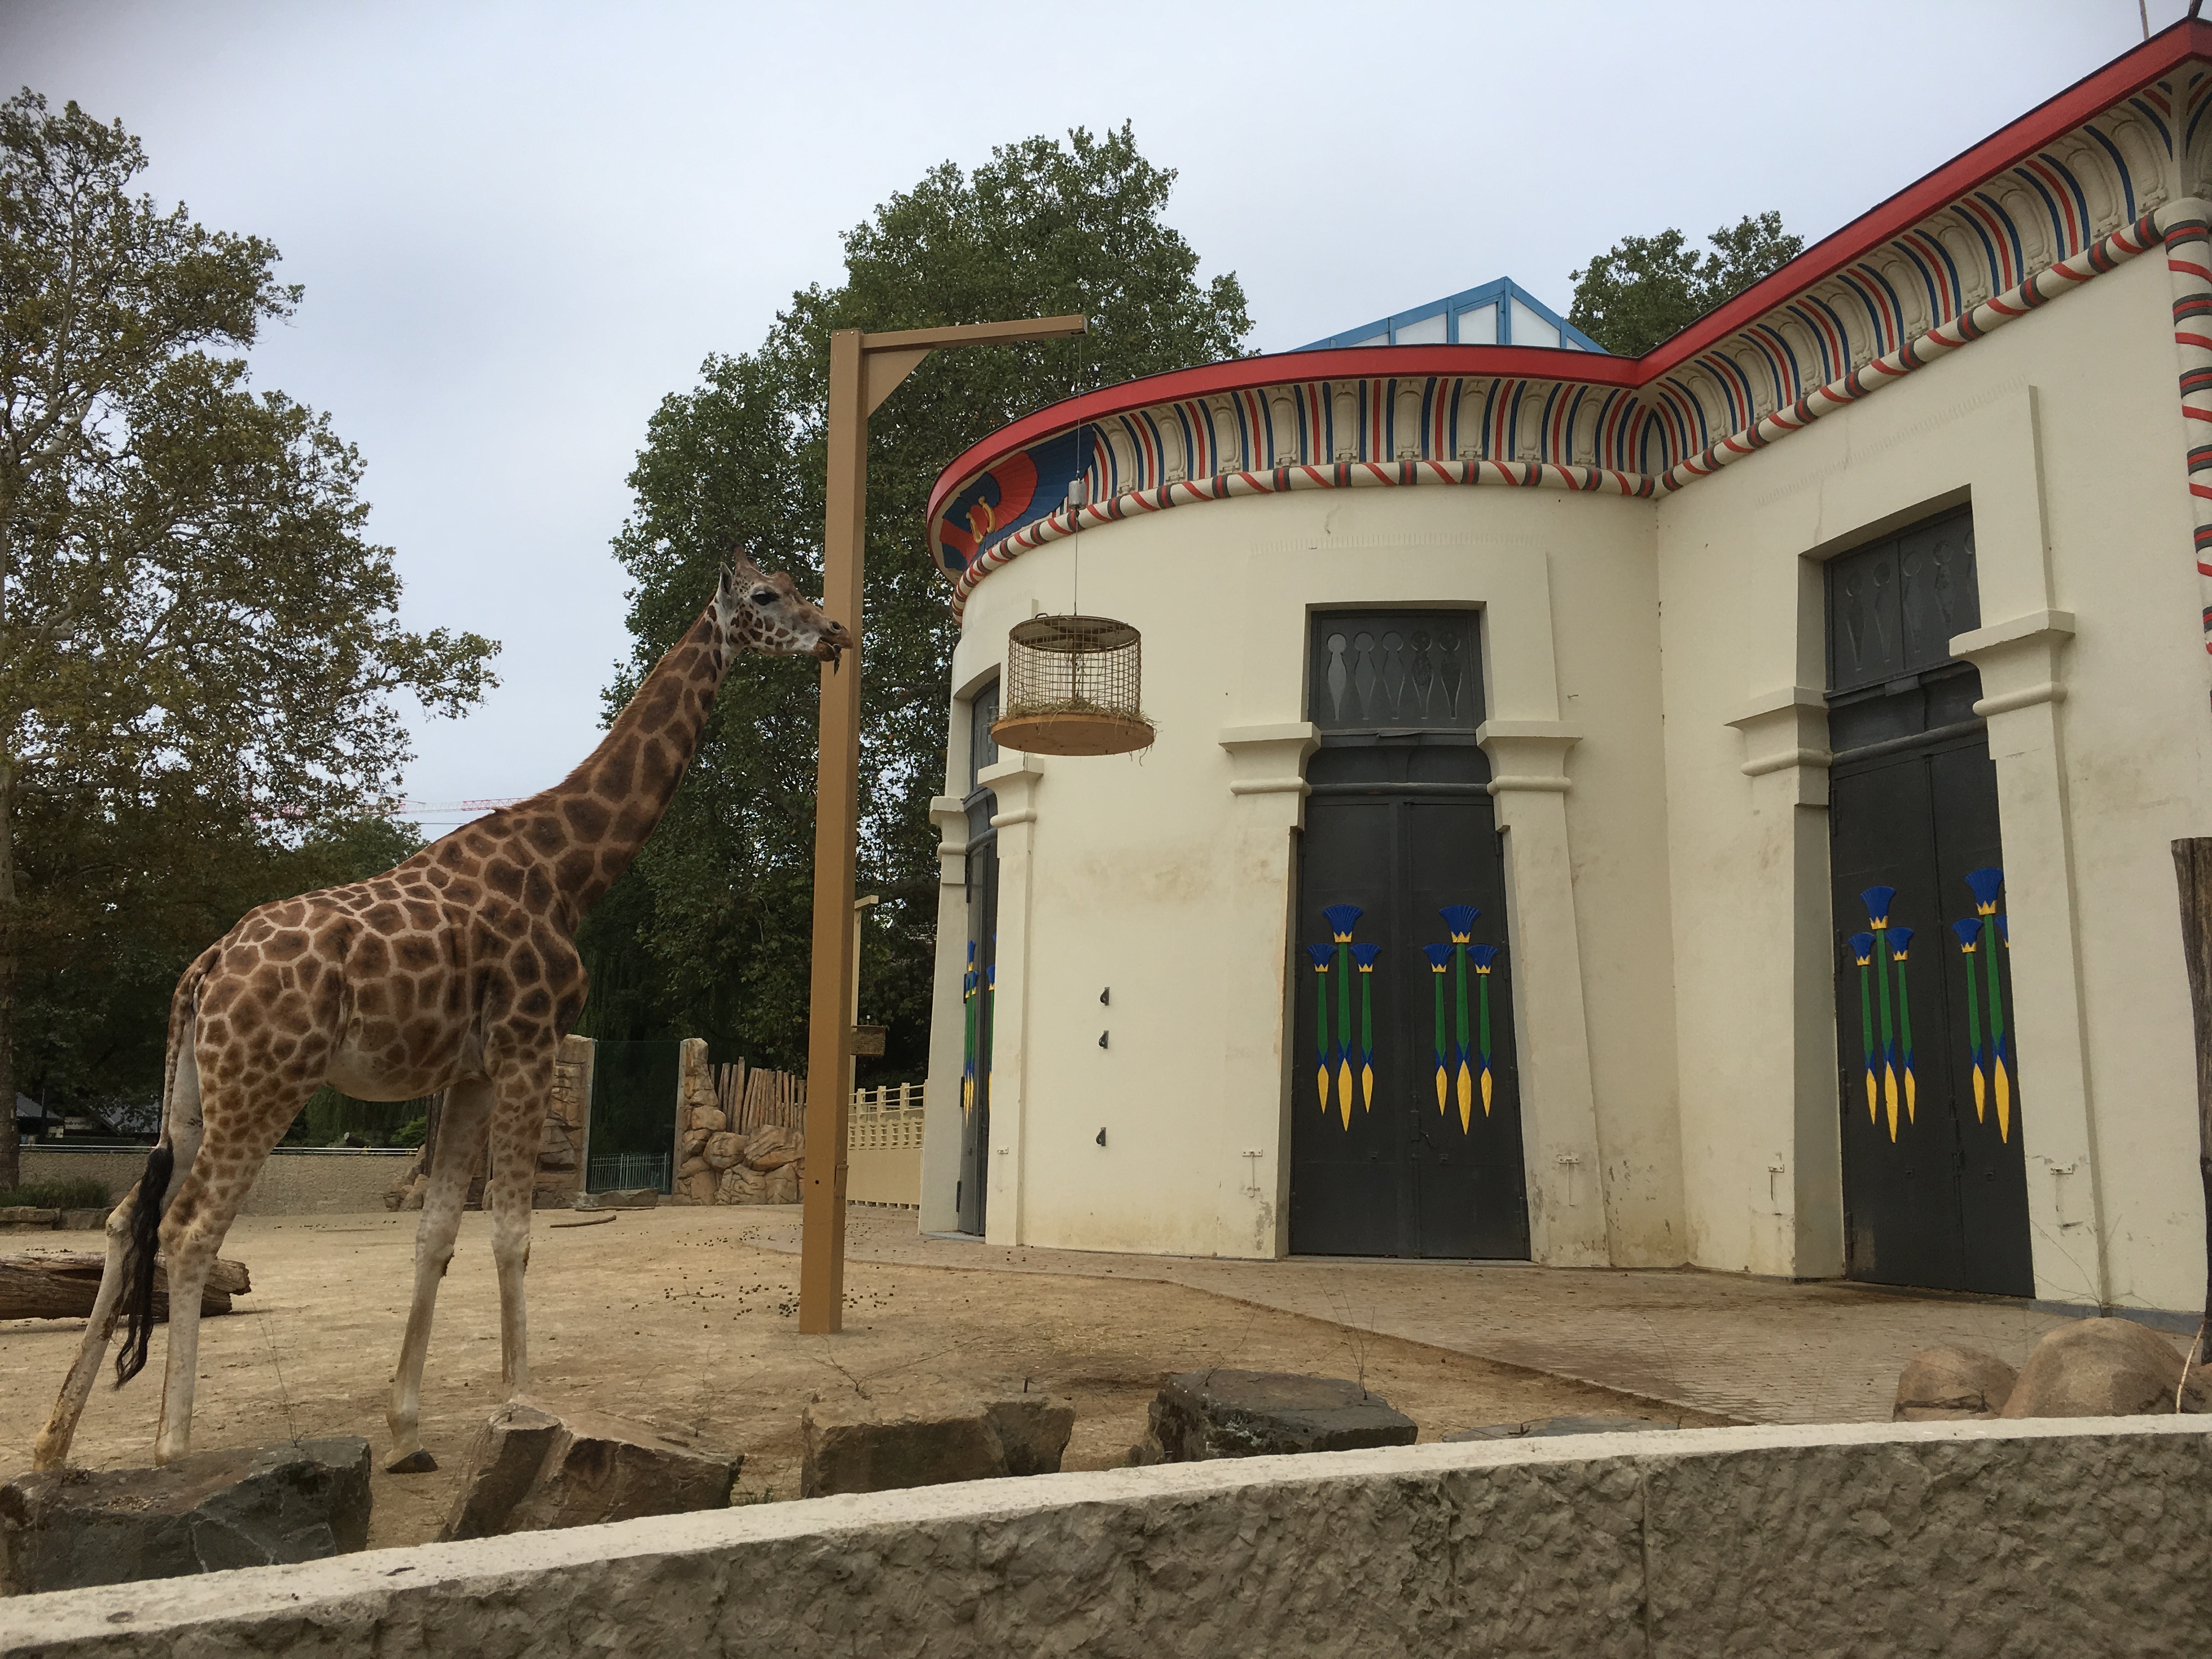 Opknapbeurt in de Zoo van Antwerpen